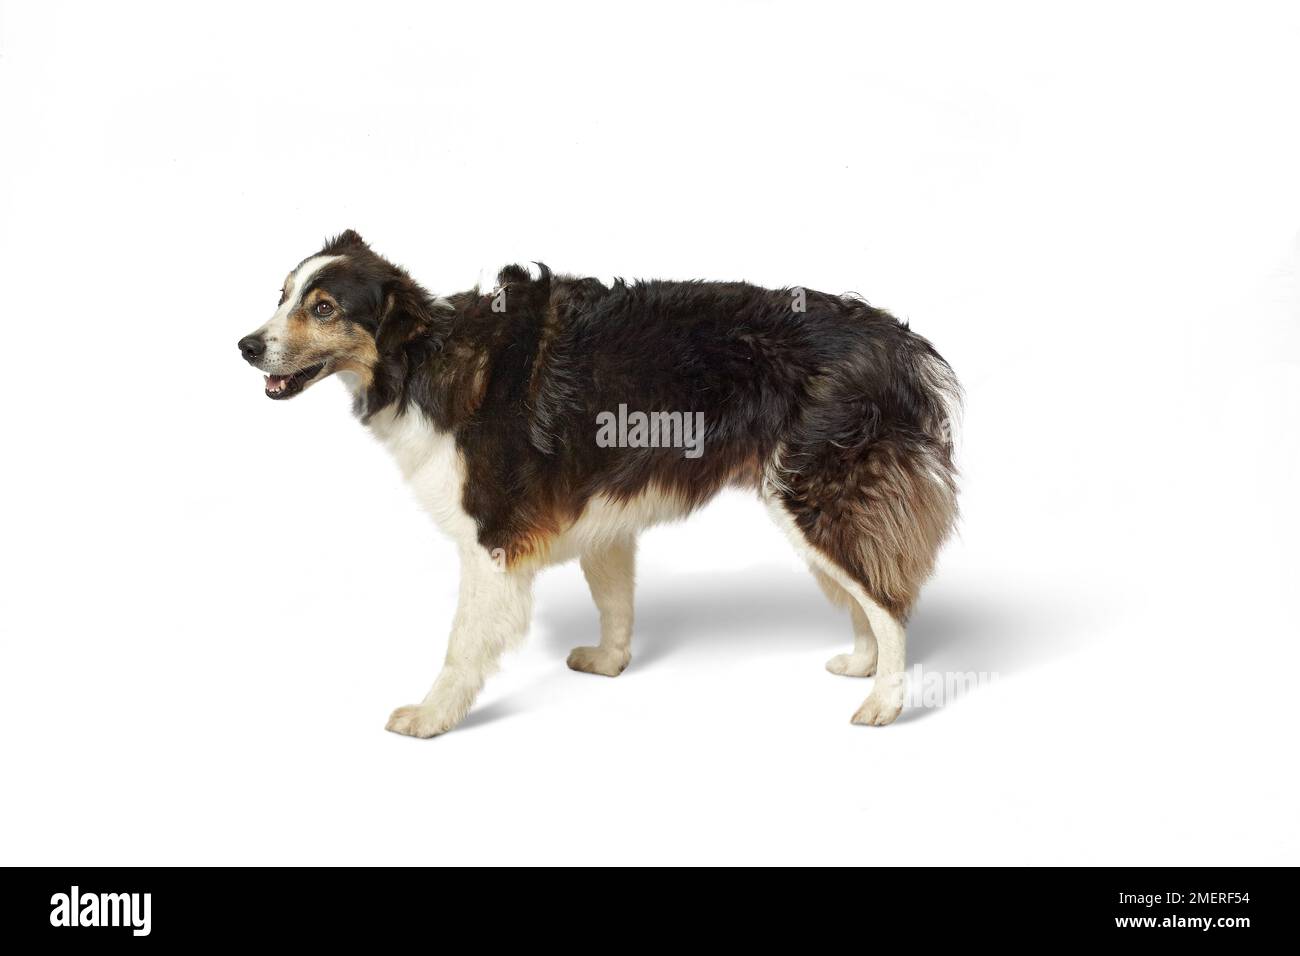 Farm dog, mixed-breed dog Stock Photo